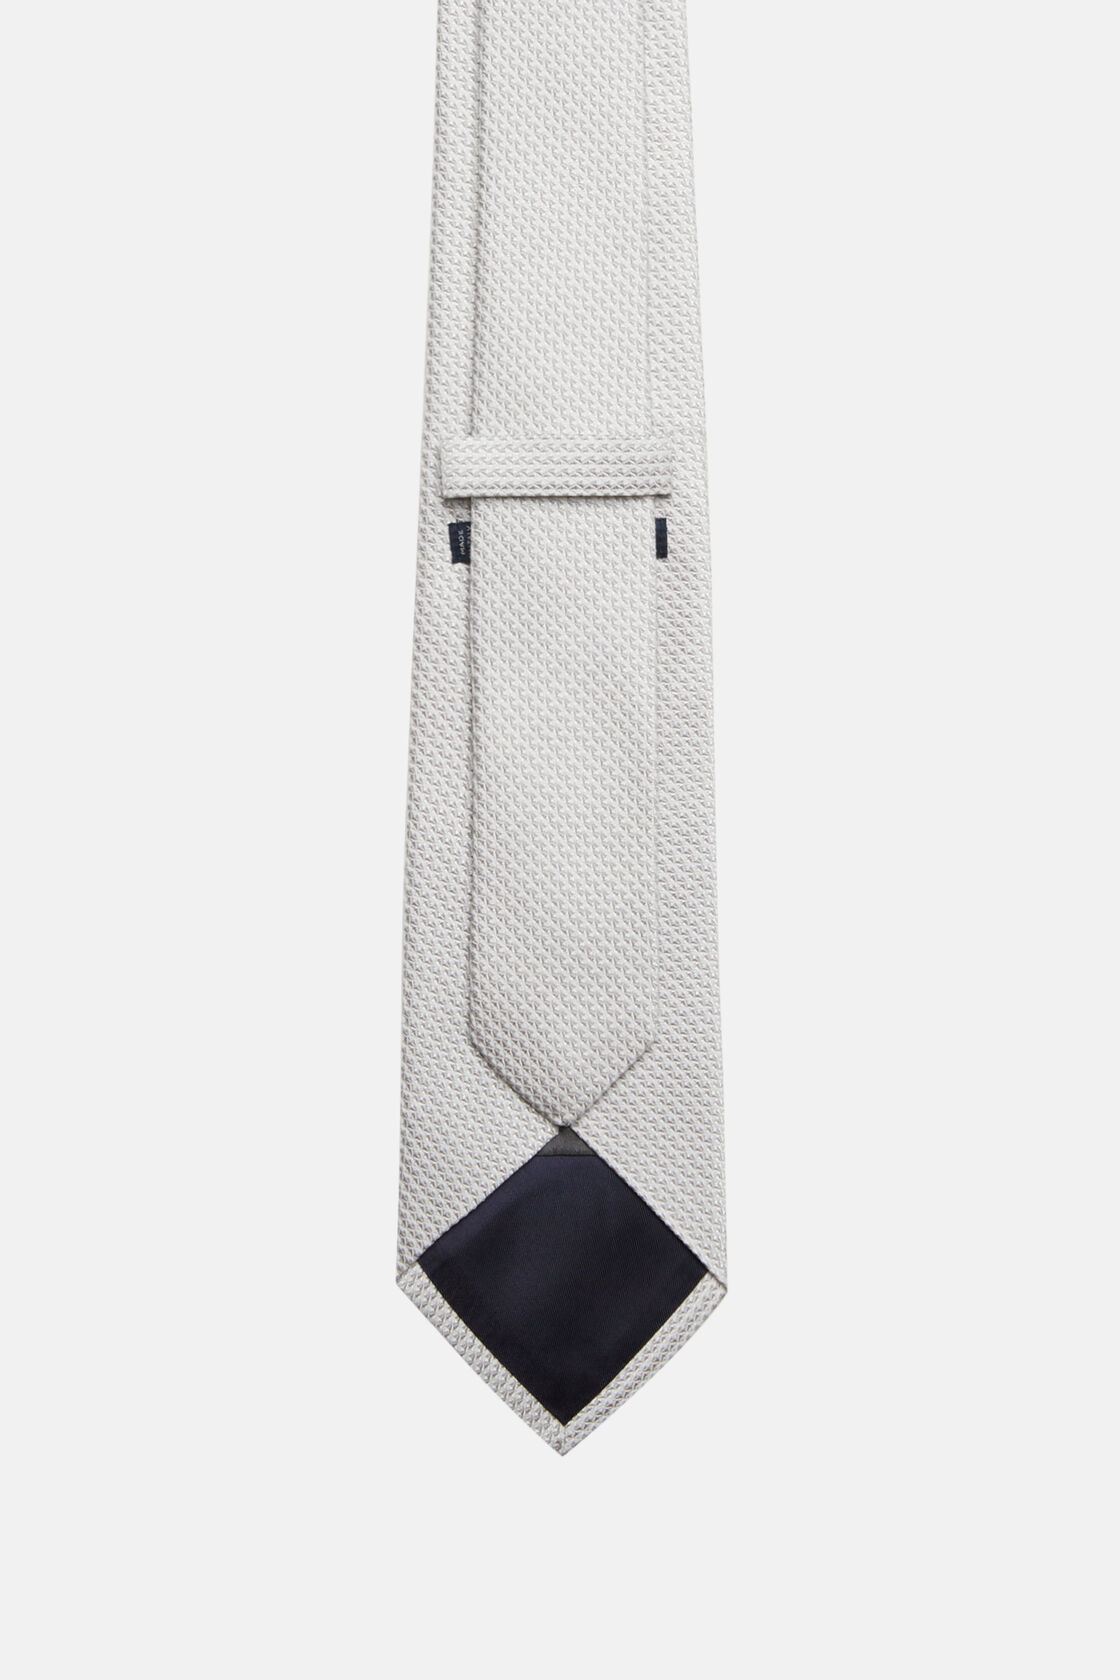 Μεταξωτή επίσημη γραβάτα, Silver, hi-res